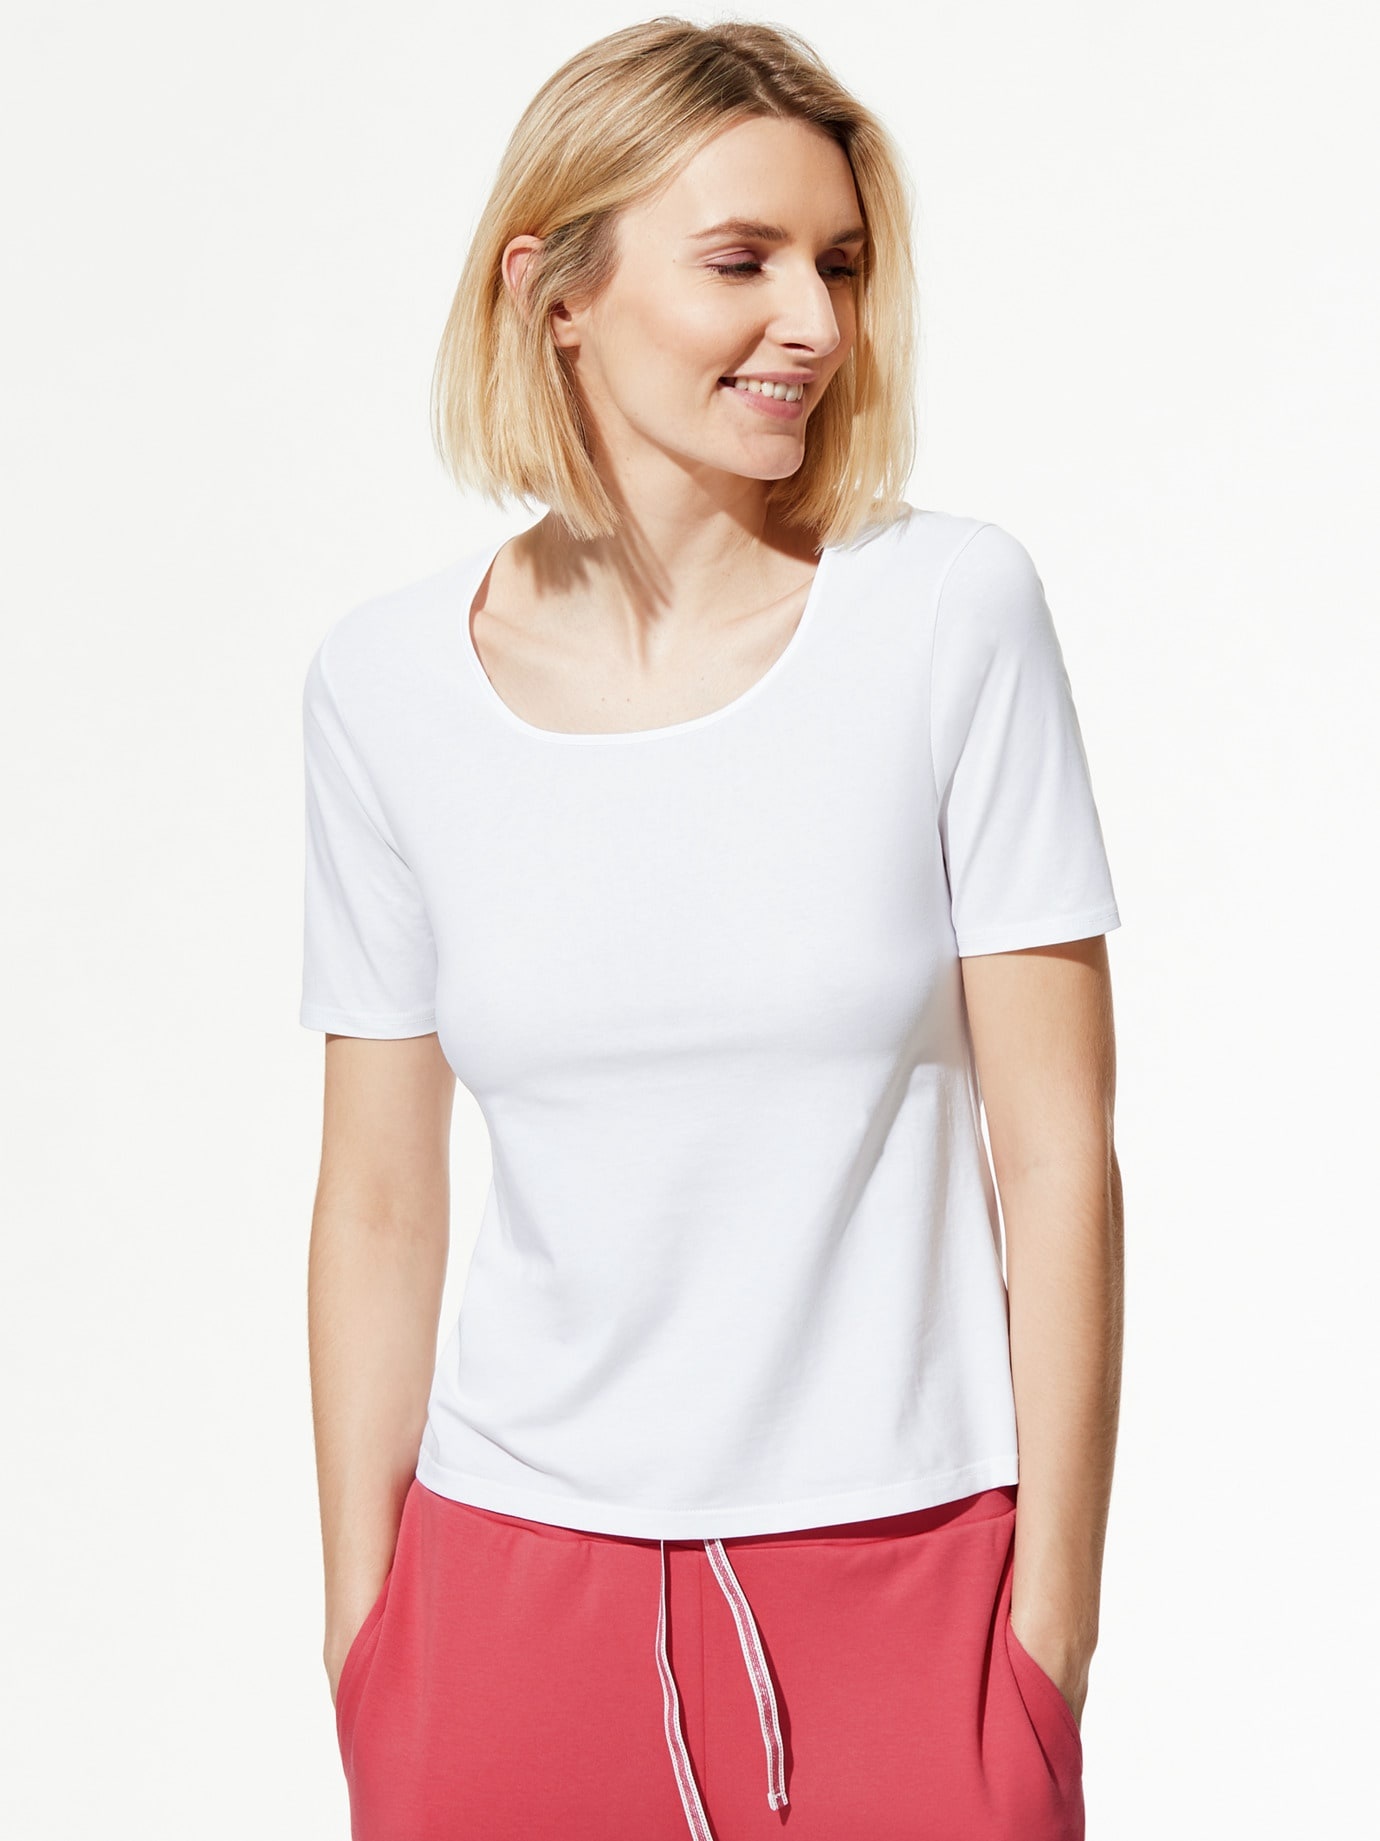 Walbusch Damen Soft Cotton Shirt 2er Pack einfarbig Weiß/Weiß 40